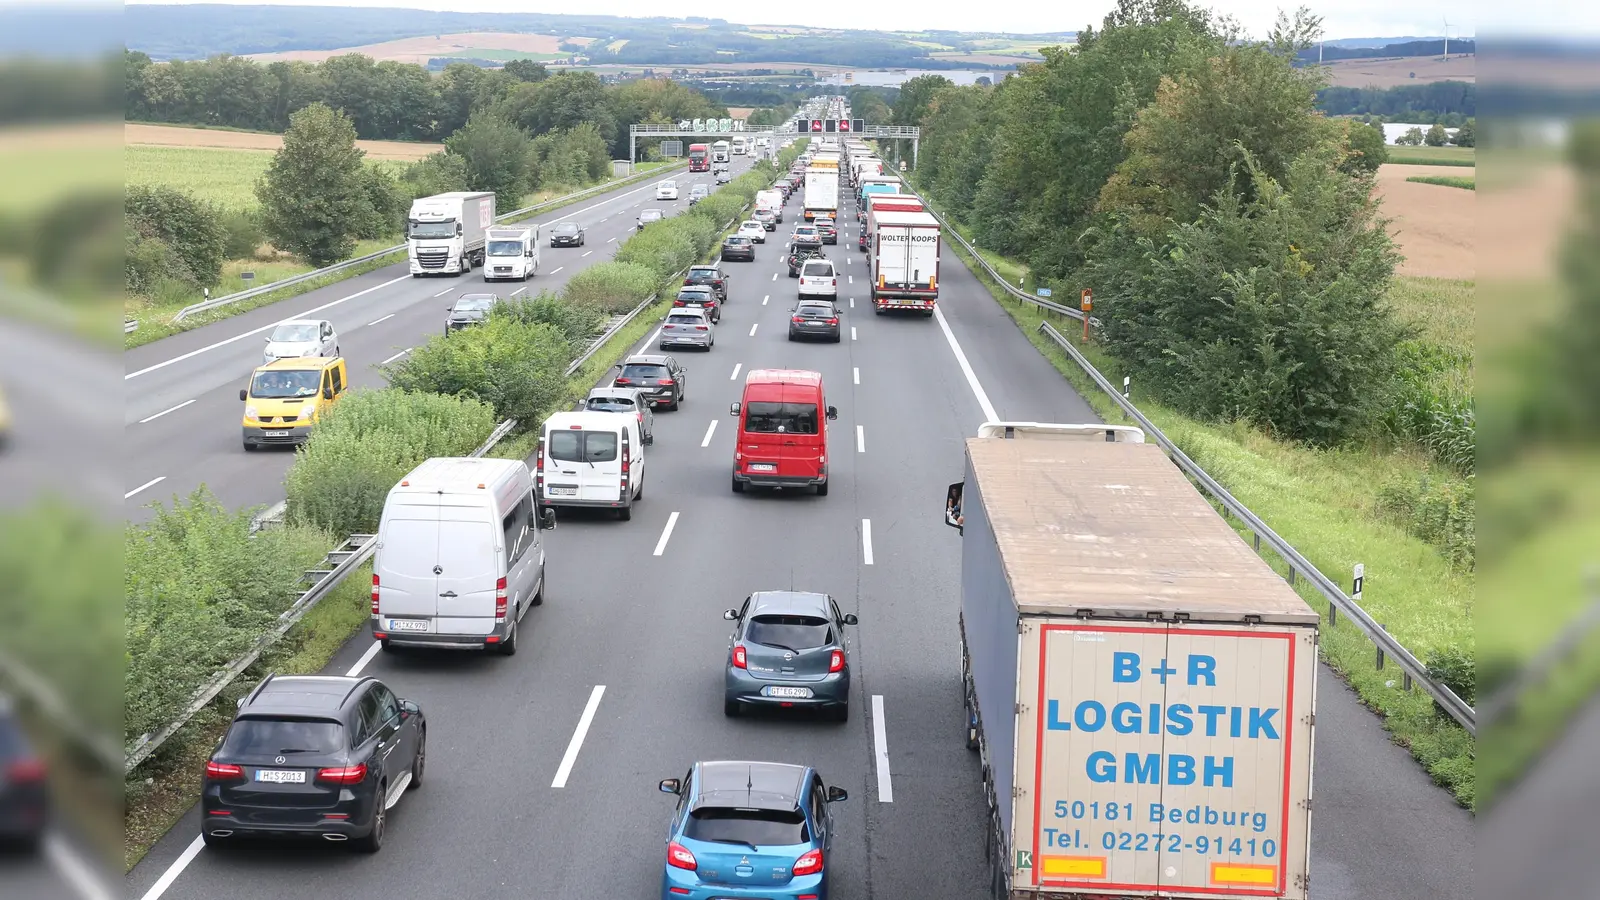 Stauungen und Stockungen auf der Autobahn sind noch bis zum 19. Augst zu erwarten, damit auch weiterhin große Ausweichverkehrsströme durch die umliegenden Ortschaften.  (Foto: Borchers, Bastian)